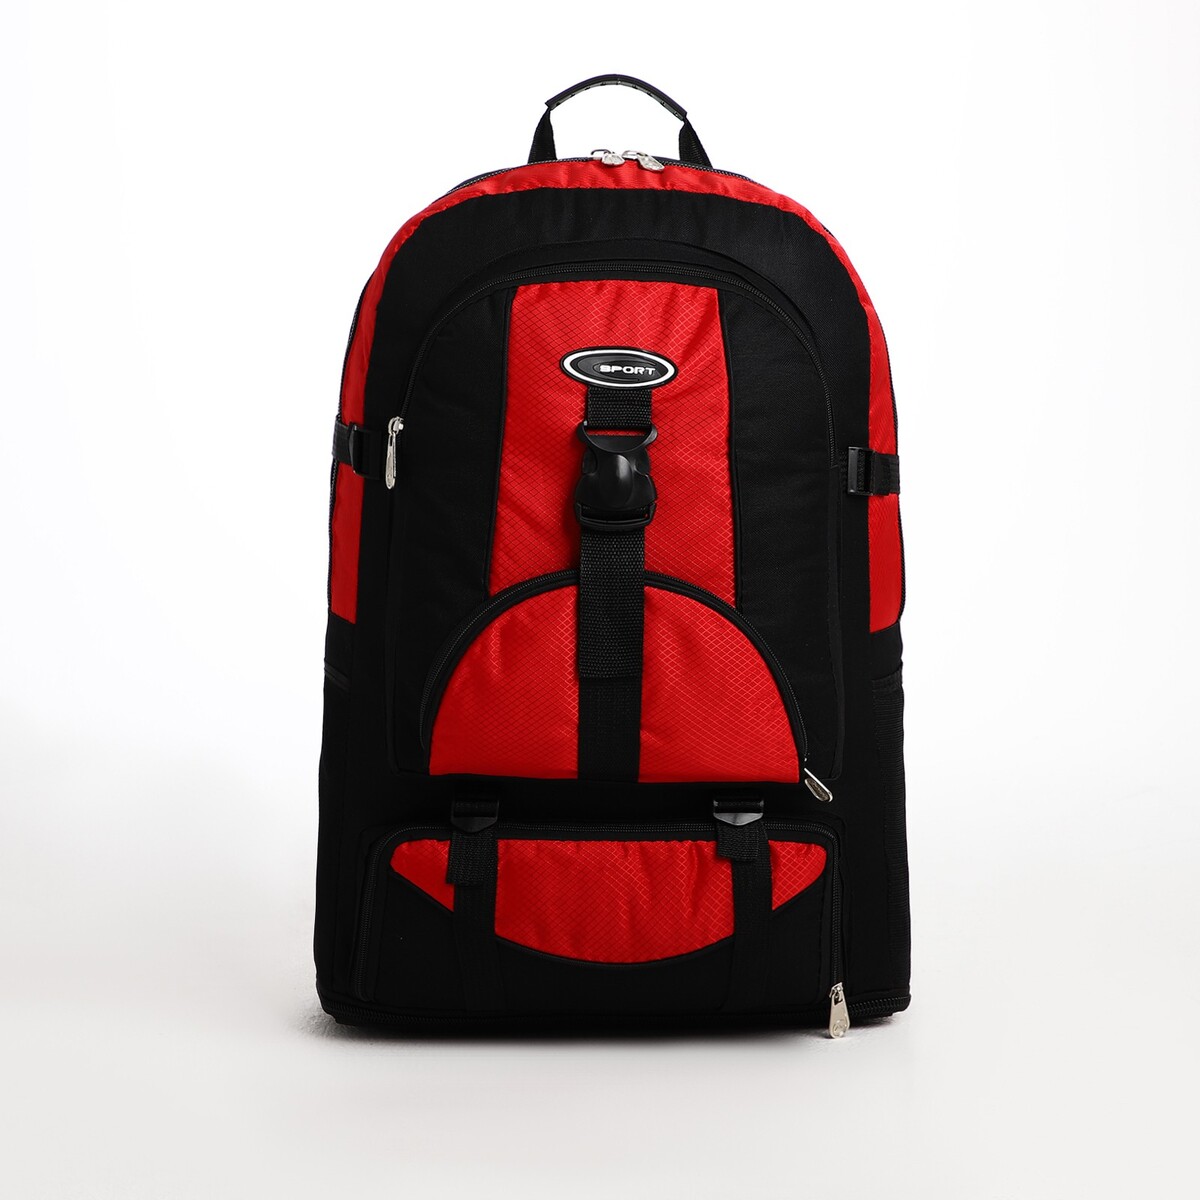 Рюкзак туристический на молнии, 5 наружных карманов, цвет черный/красный